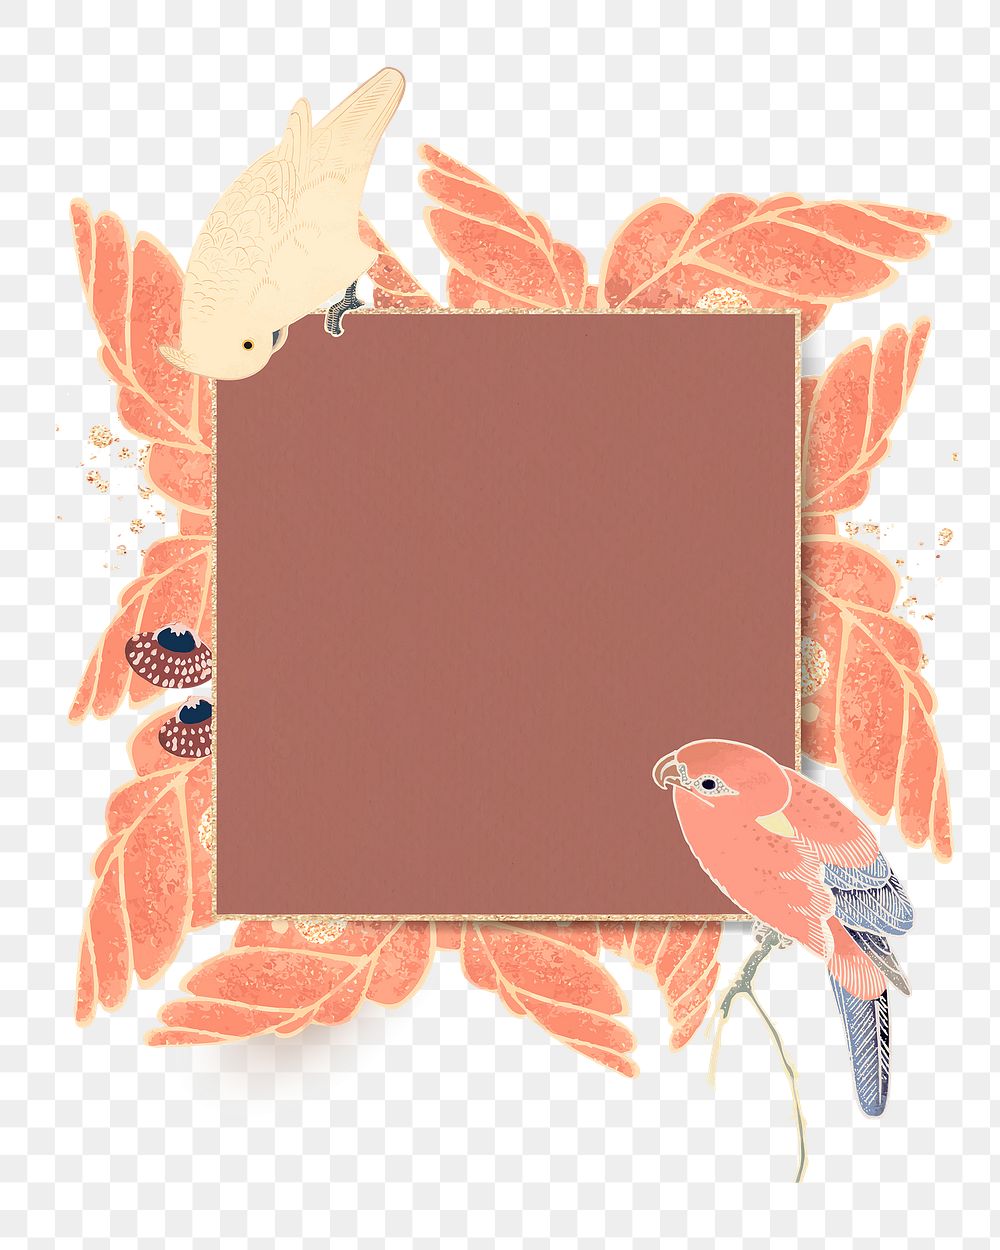 Png square botanical frame, transparent background